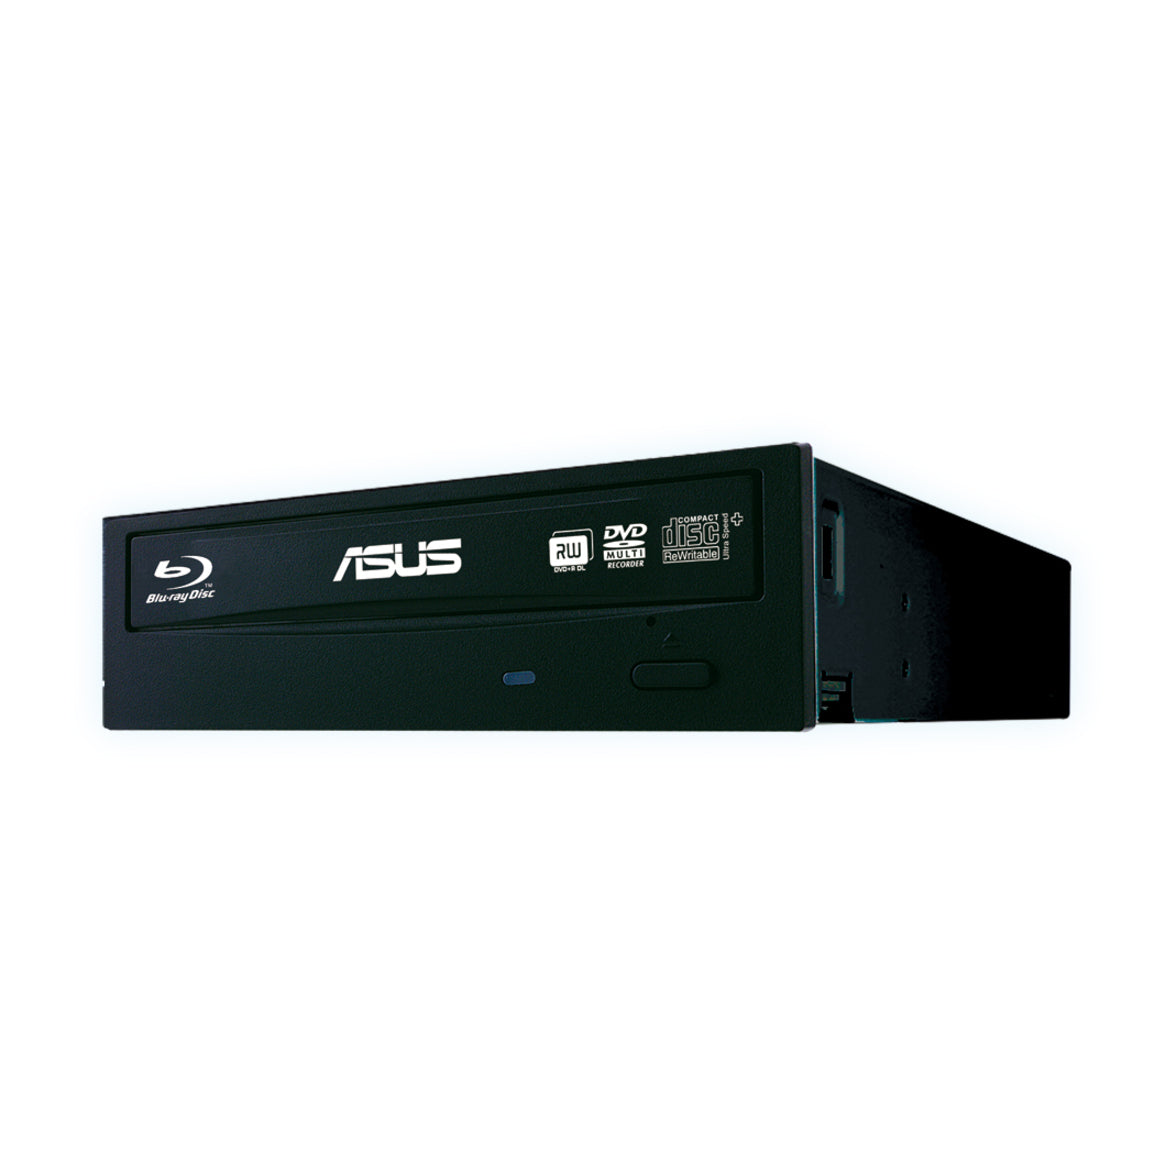 Asus BW-16D1HT Blu-ray Writer Internal, 16X Blu-Ray Disc Drive, SATA, 12x BD Read Speed